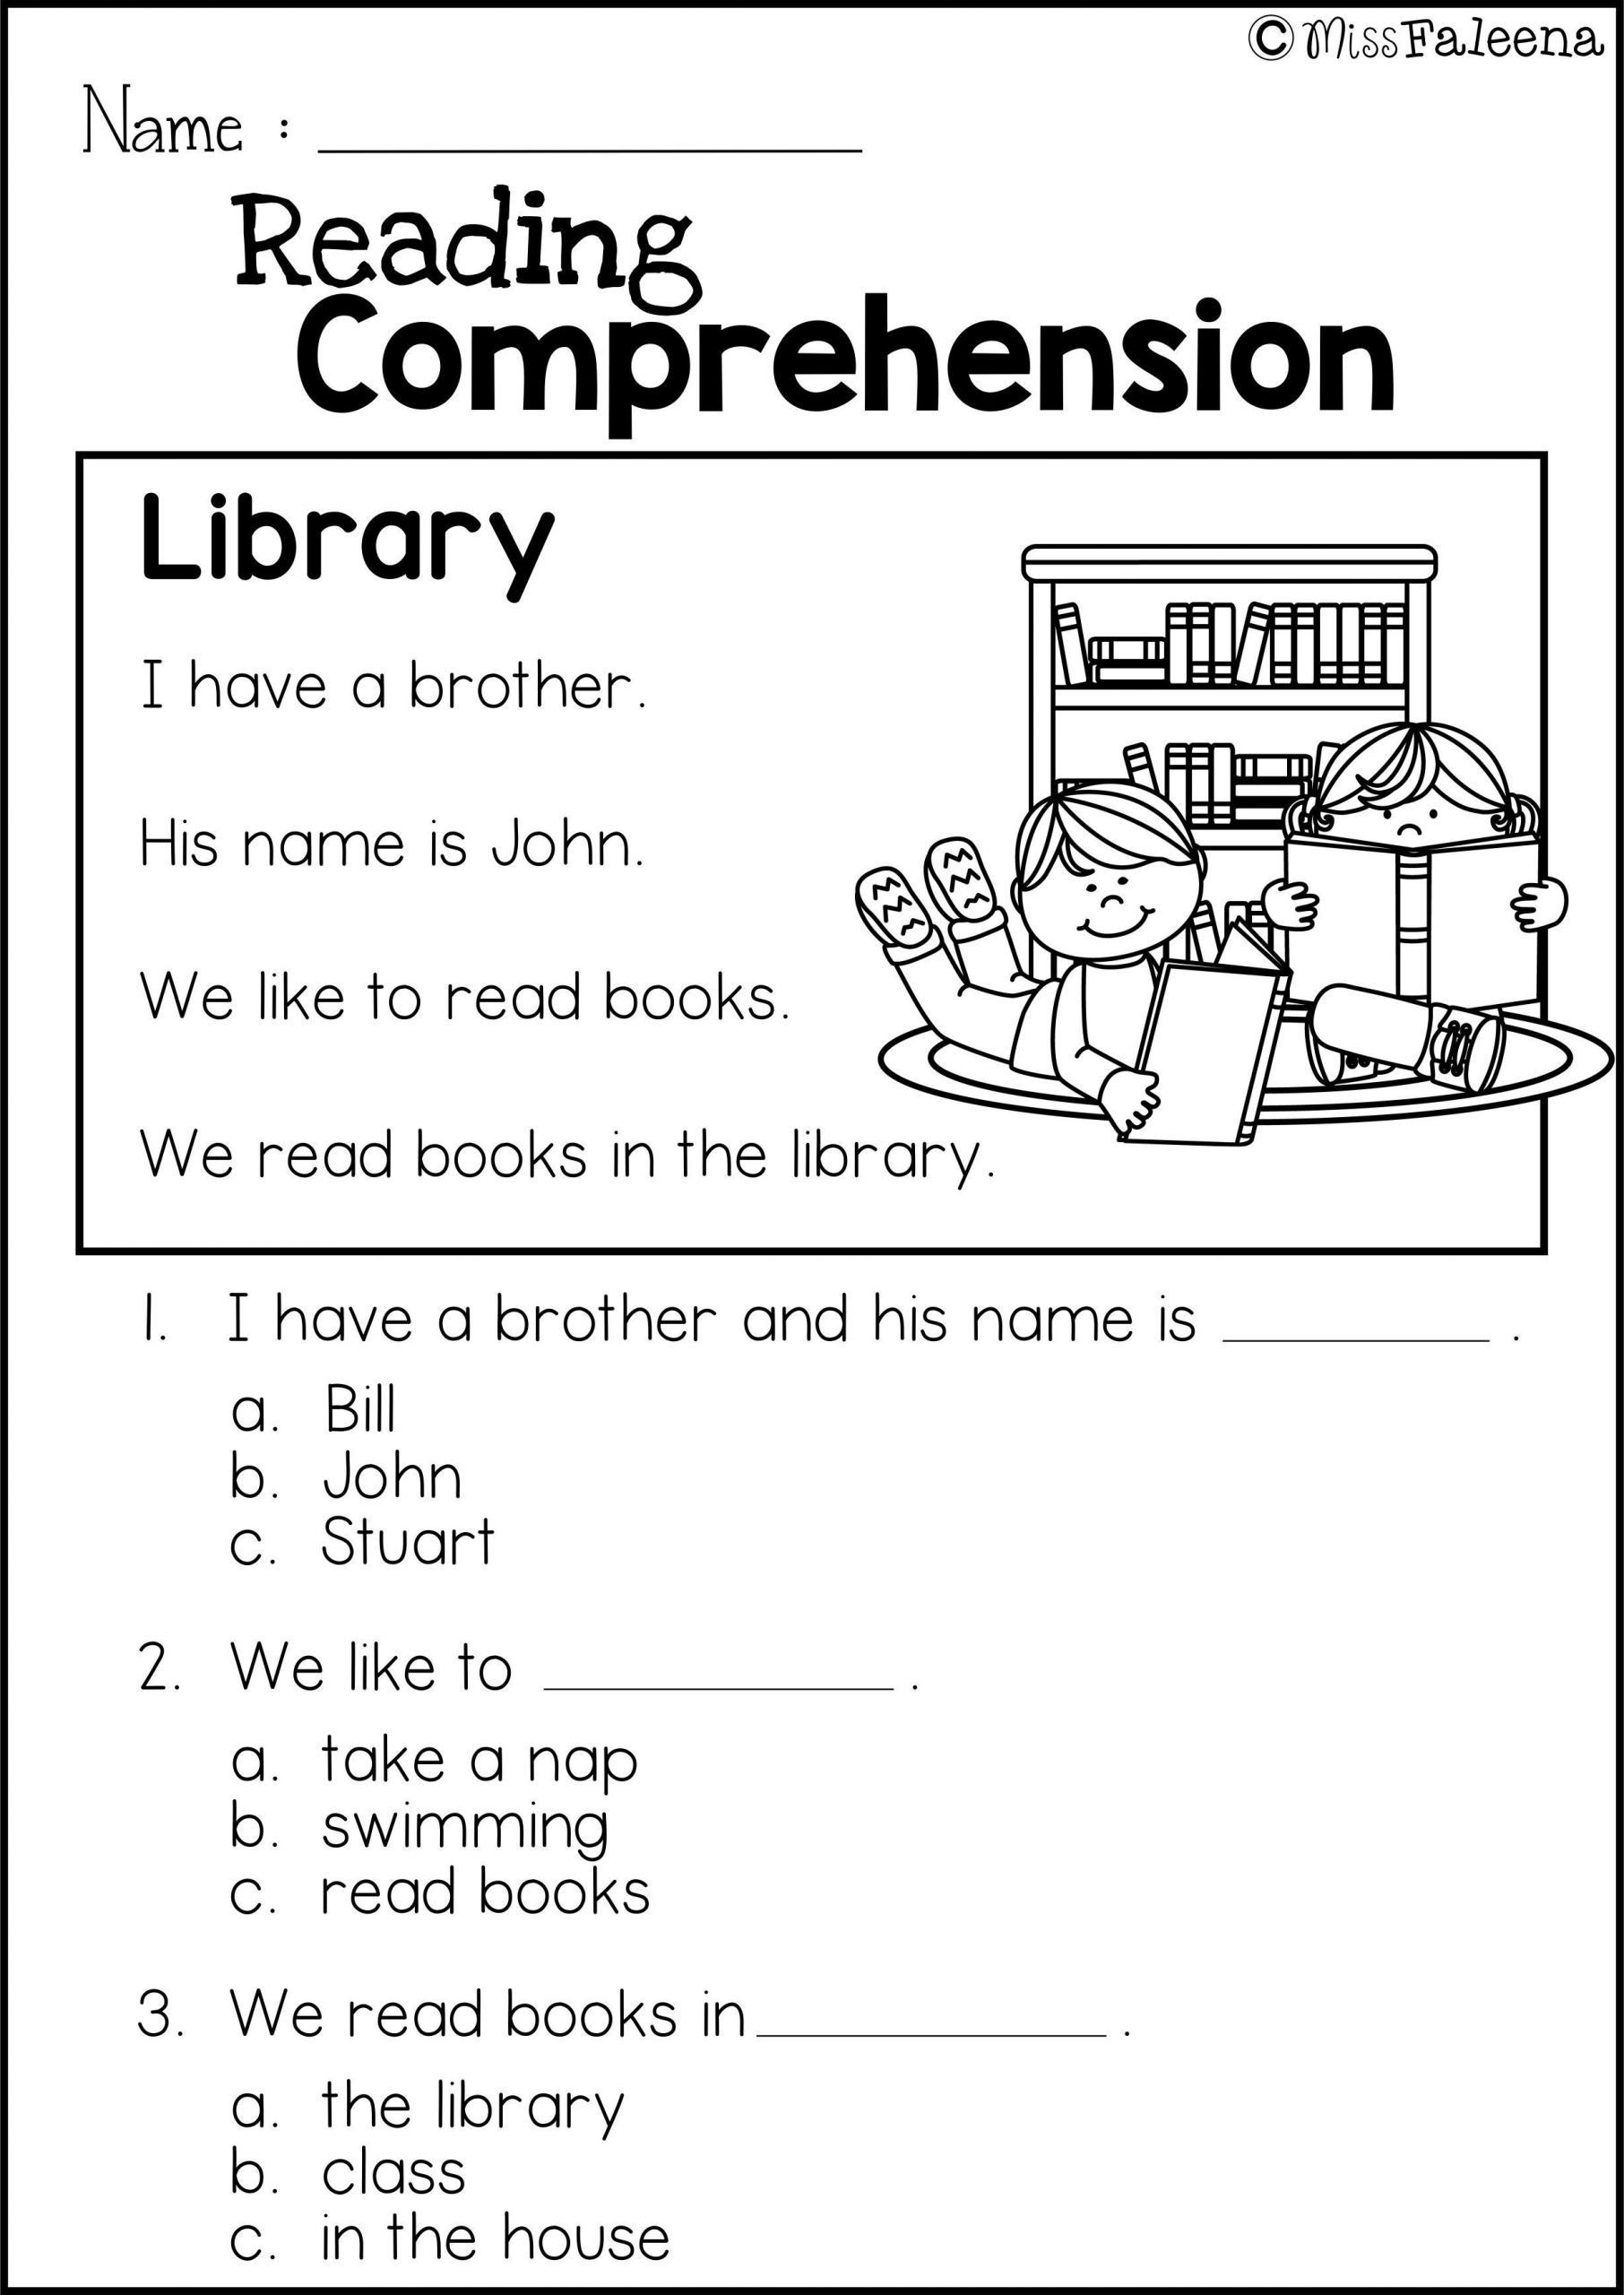 Comprehension Worksheets for First Grade 4 Worksheet Reading Prehension Worksheets First Grade 1